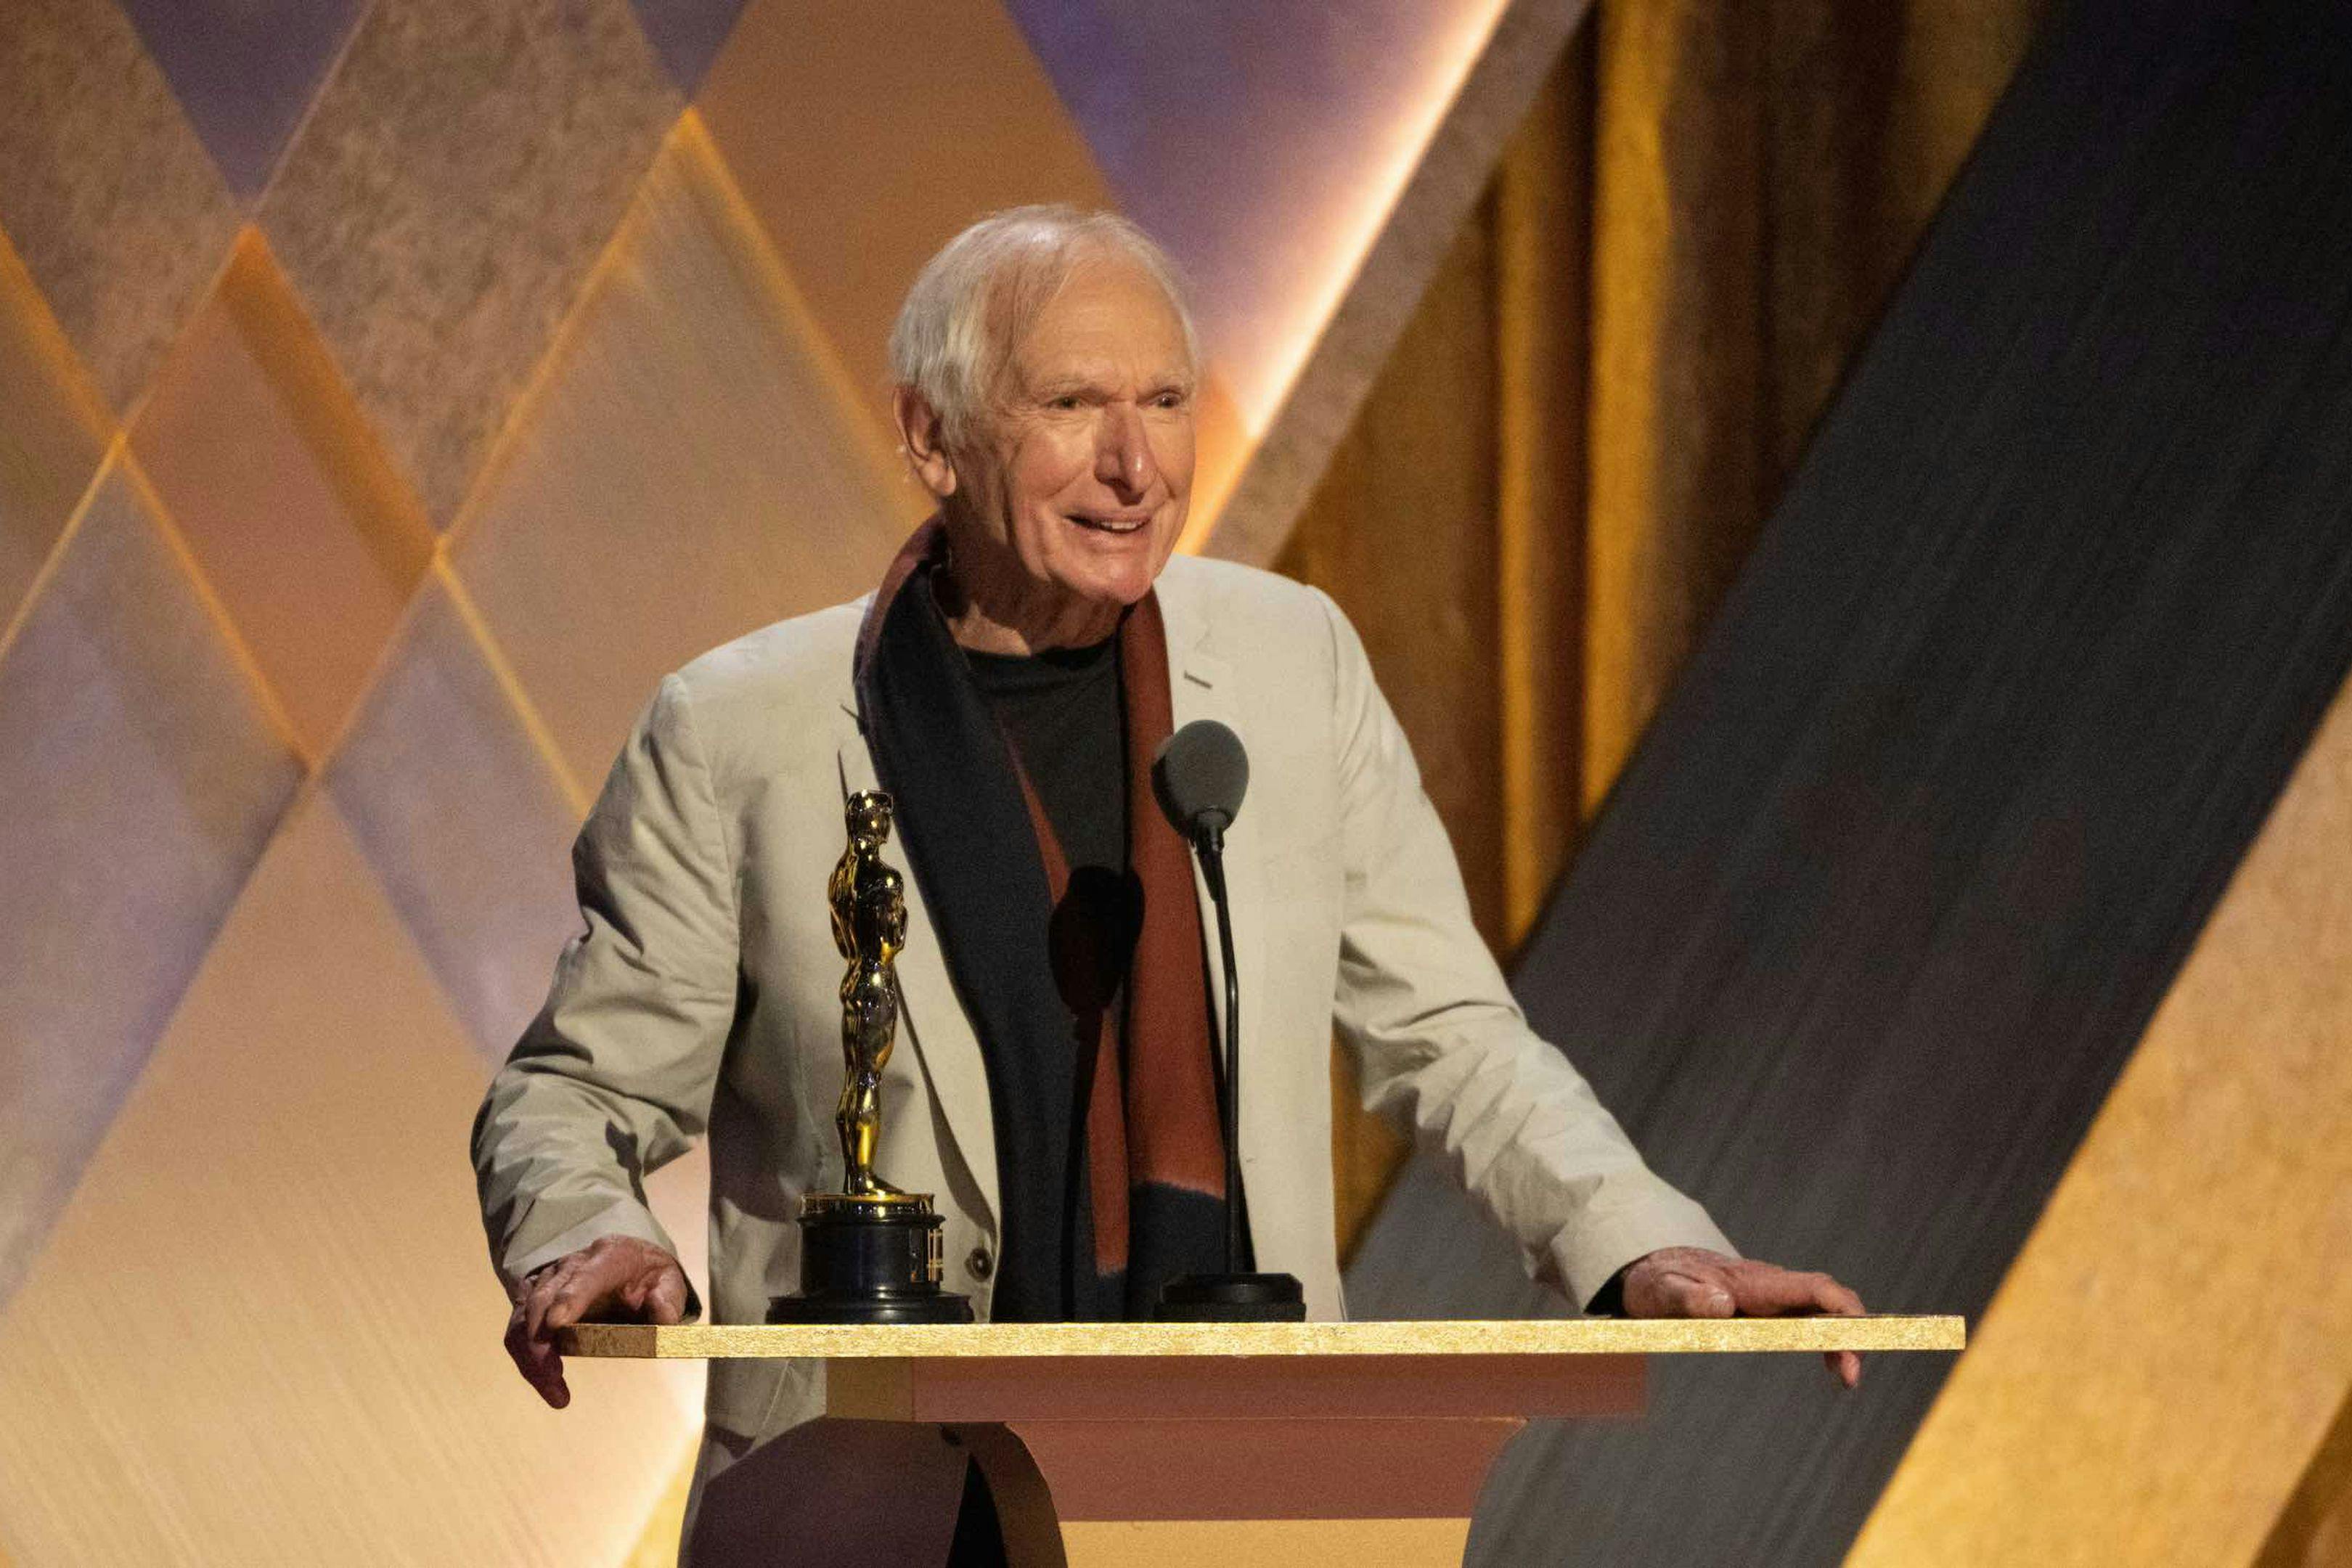 Peter Weir recoge el Oscar honorífico en los Governor Awards de 2022